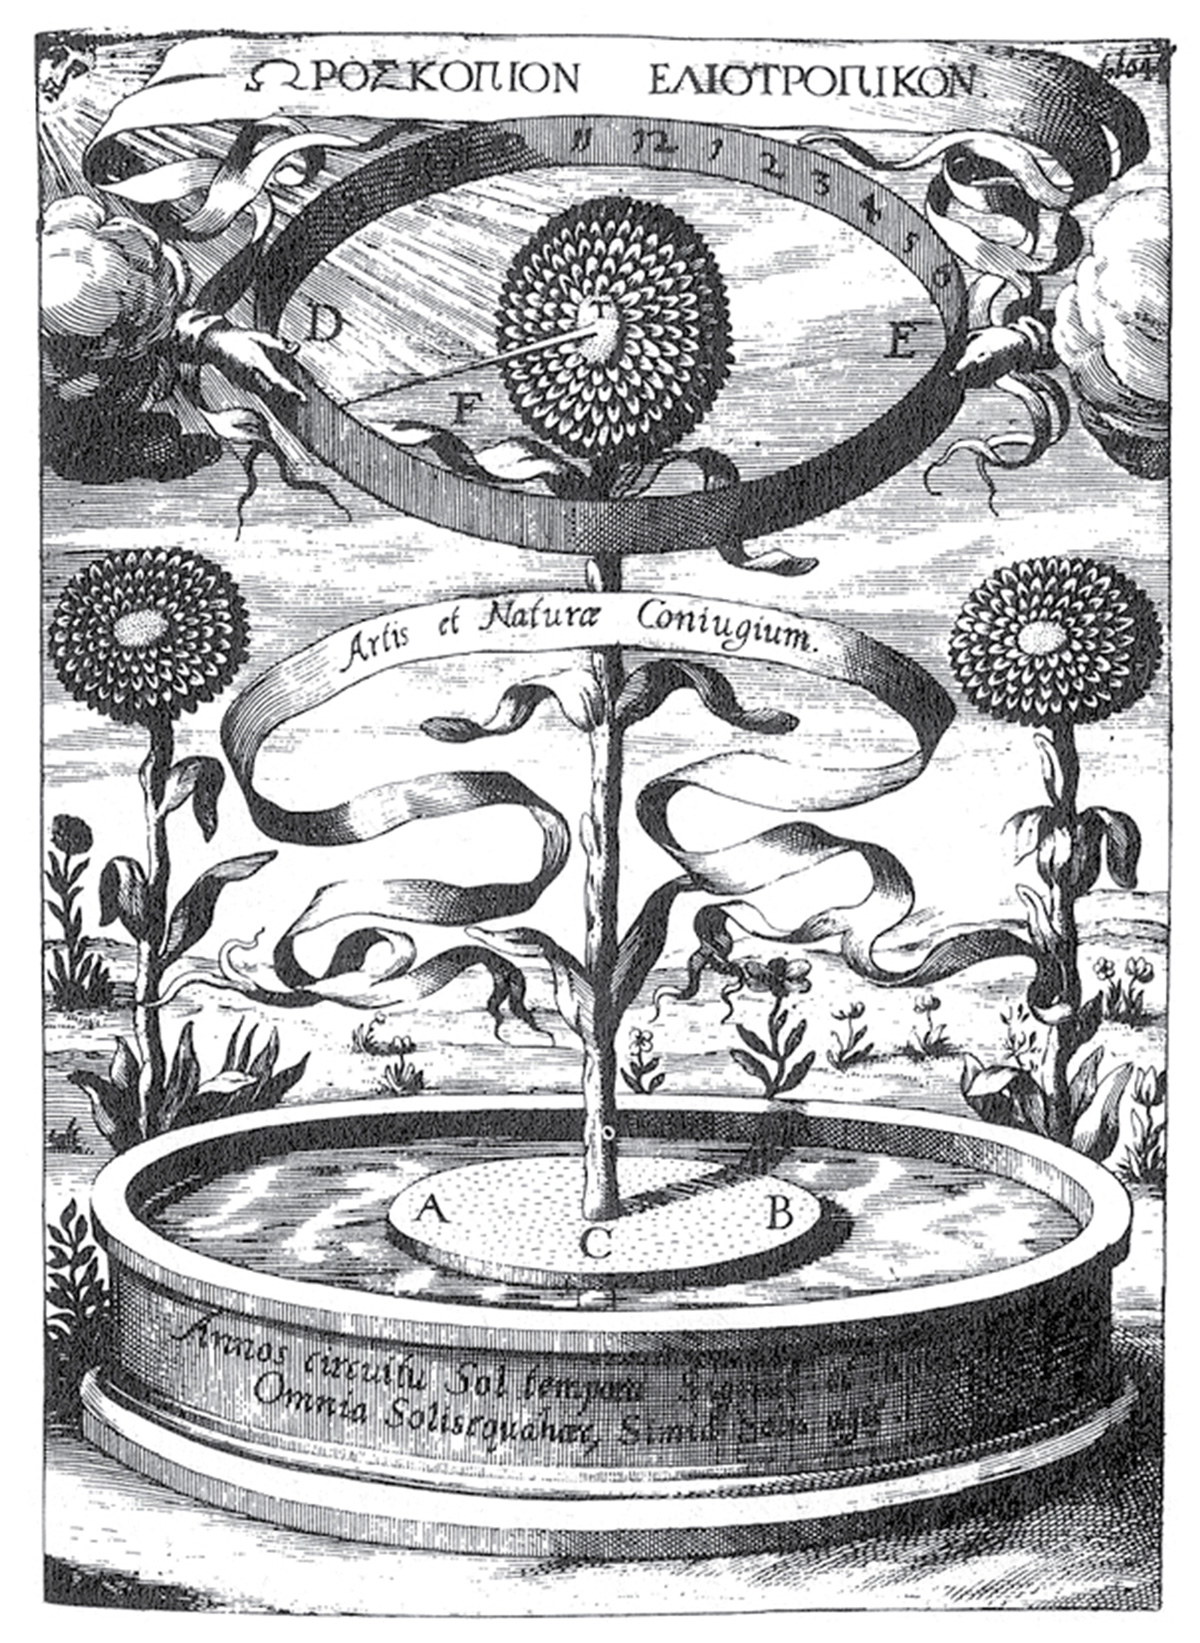 L’horloge tournesol imaginée (et truquée) par Athanasius Kircher